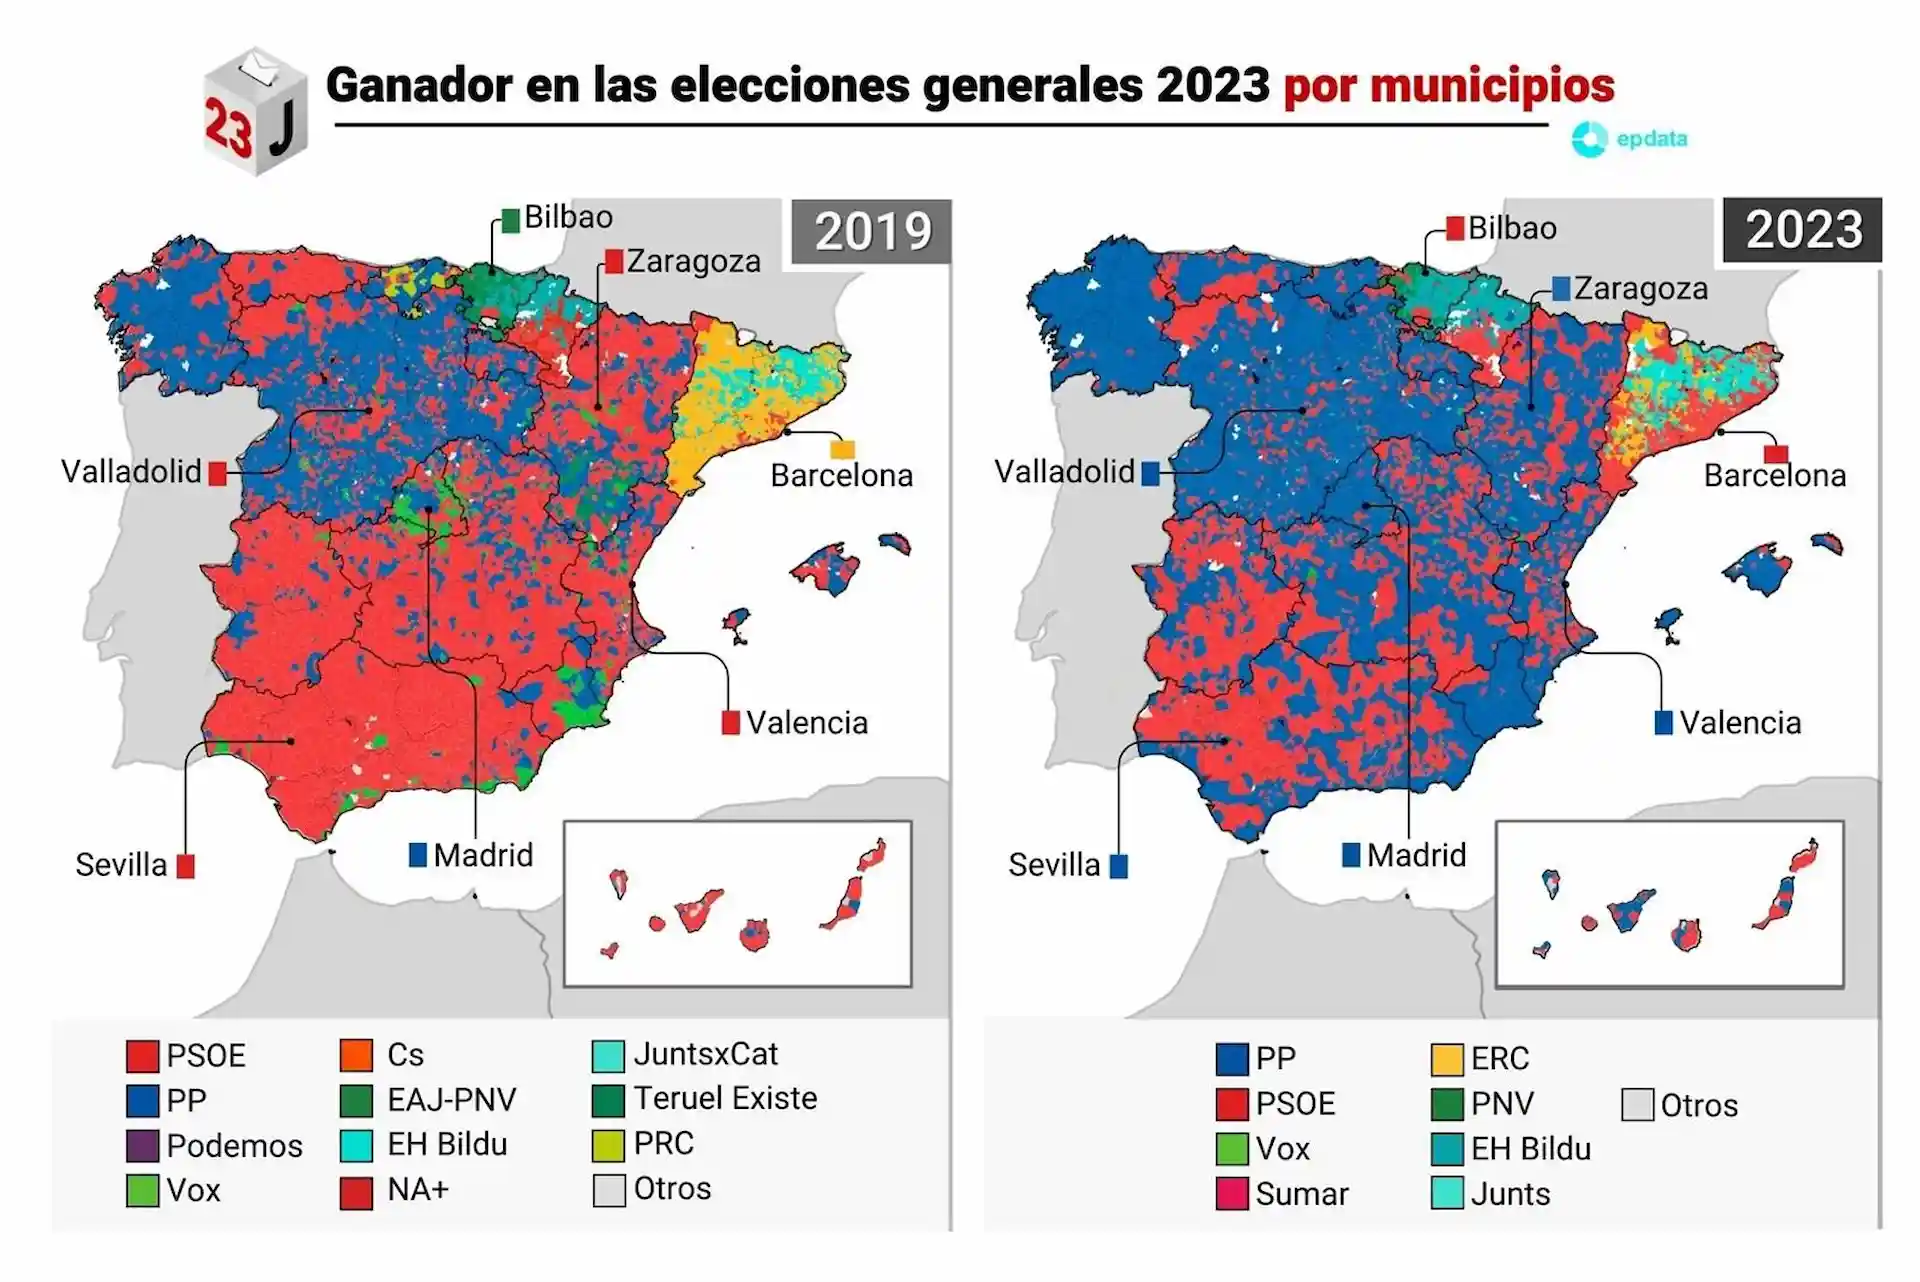 Ganador de las elecciones generales del 23 de julio de 2023 por municipios / Mapas: EP